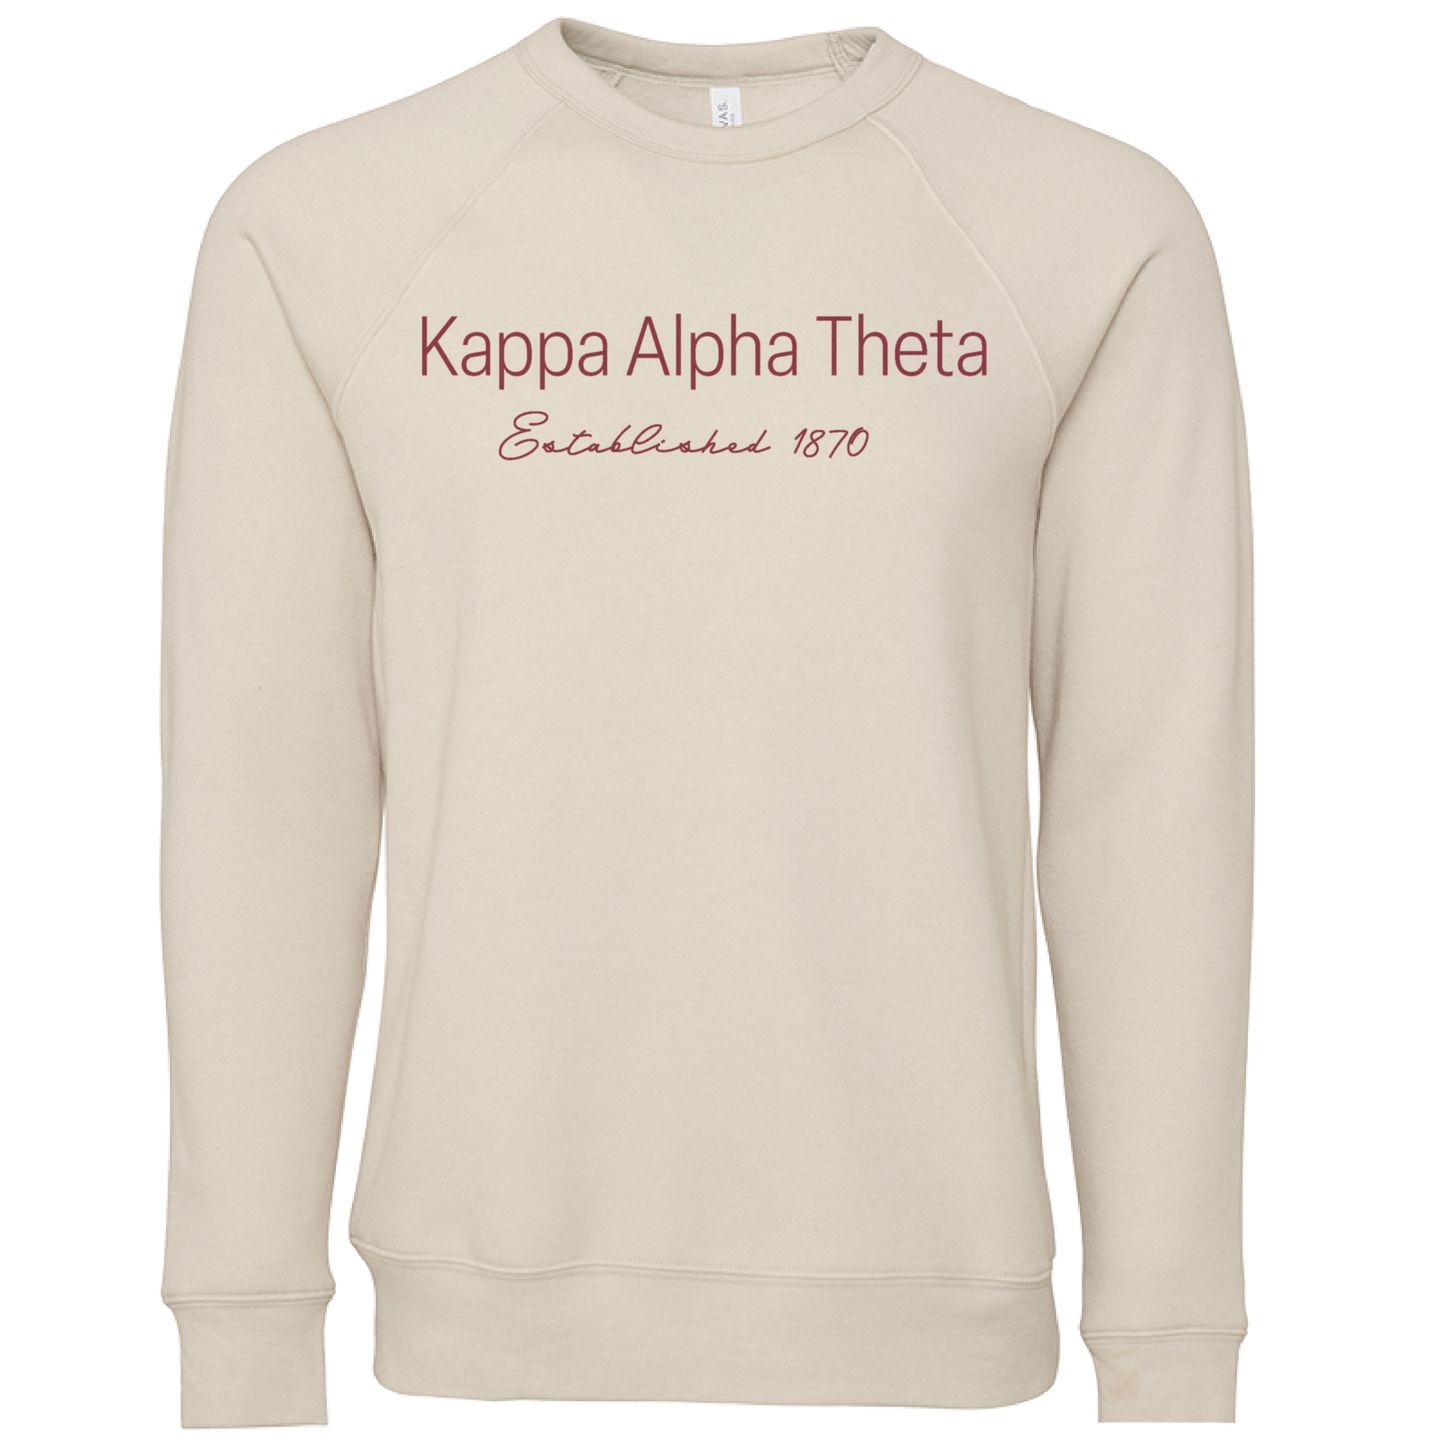 Kappa Alpha Theta Embroidered Printed Name Crewneck Sweatshirts